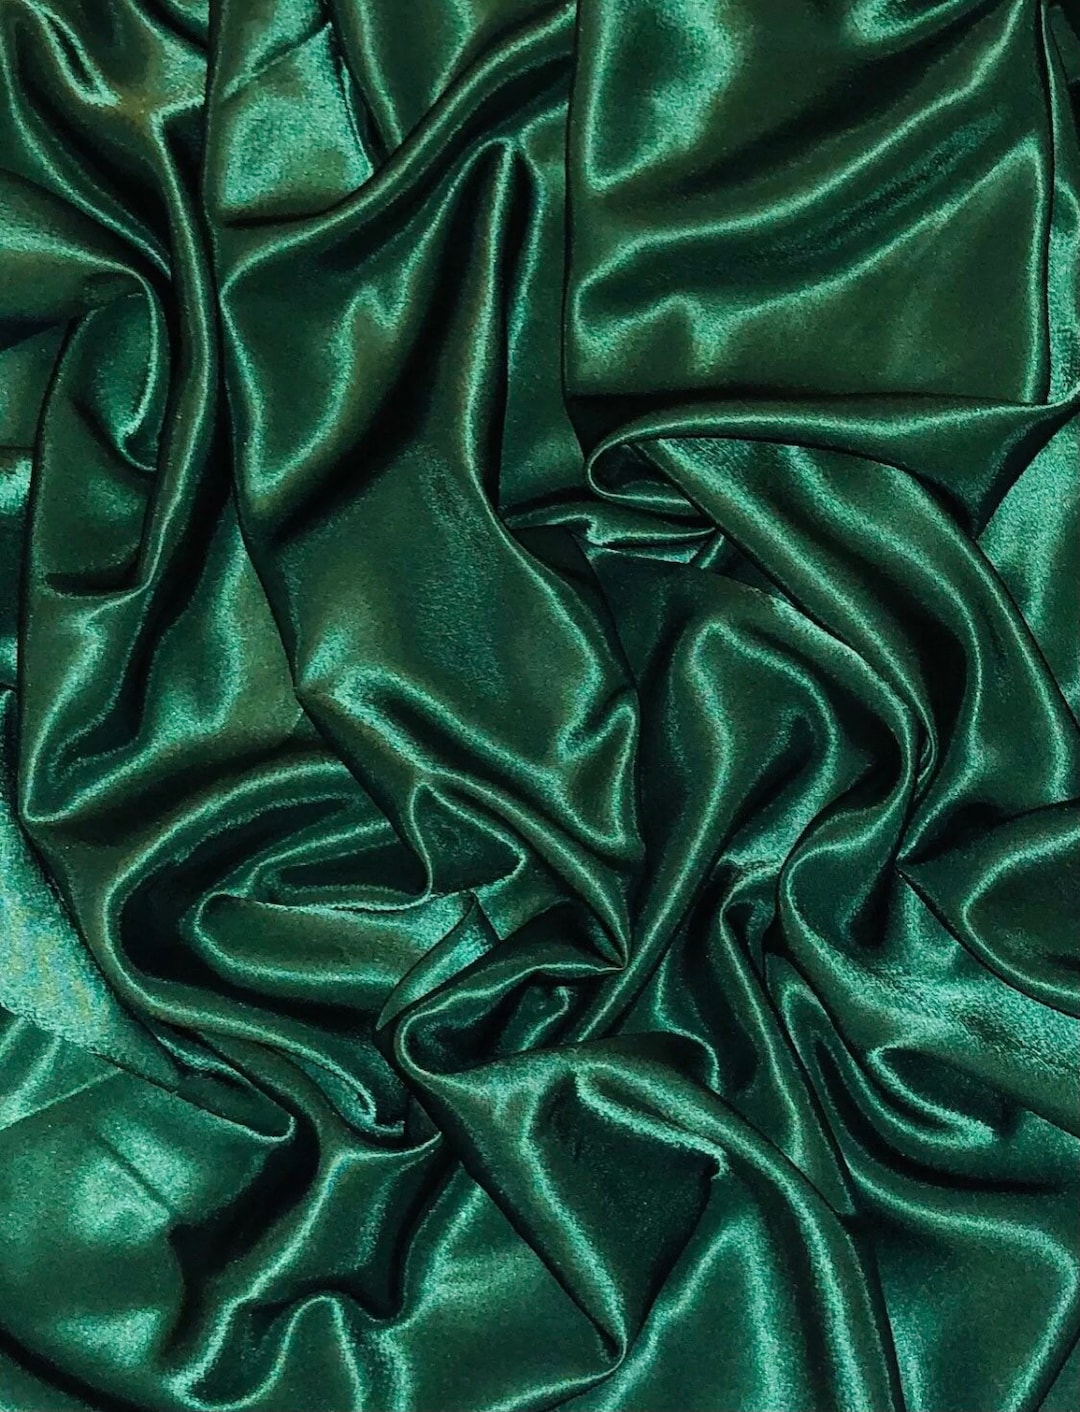  Lujosa tela de satén verde esmeralda, 5 pulgadas x 40 yardas (1  rollo), material vibrante y sedoso para una decoración elegante, bodas,  manualidades : Todo lo demás